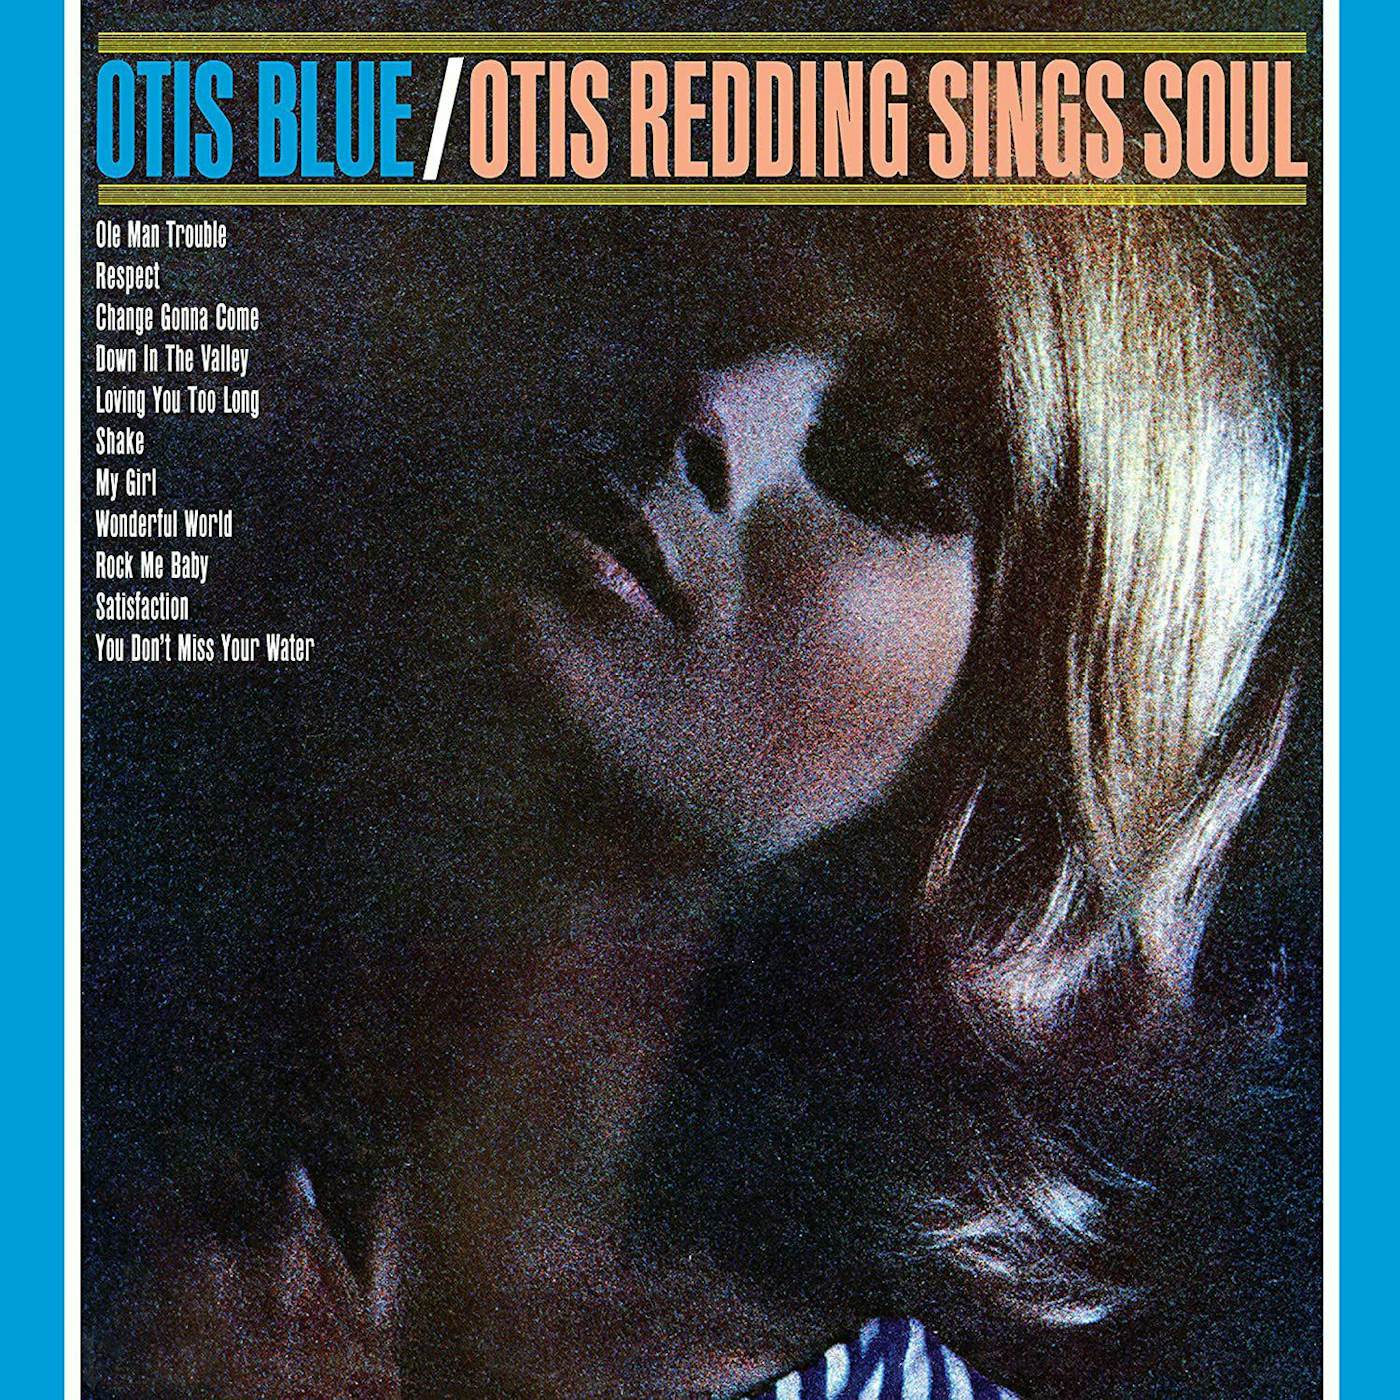 Otis Blue / Otis Redding Sings Soul (Blue) Vinyl Record